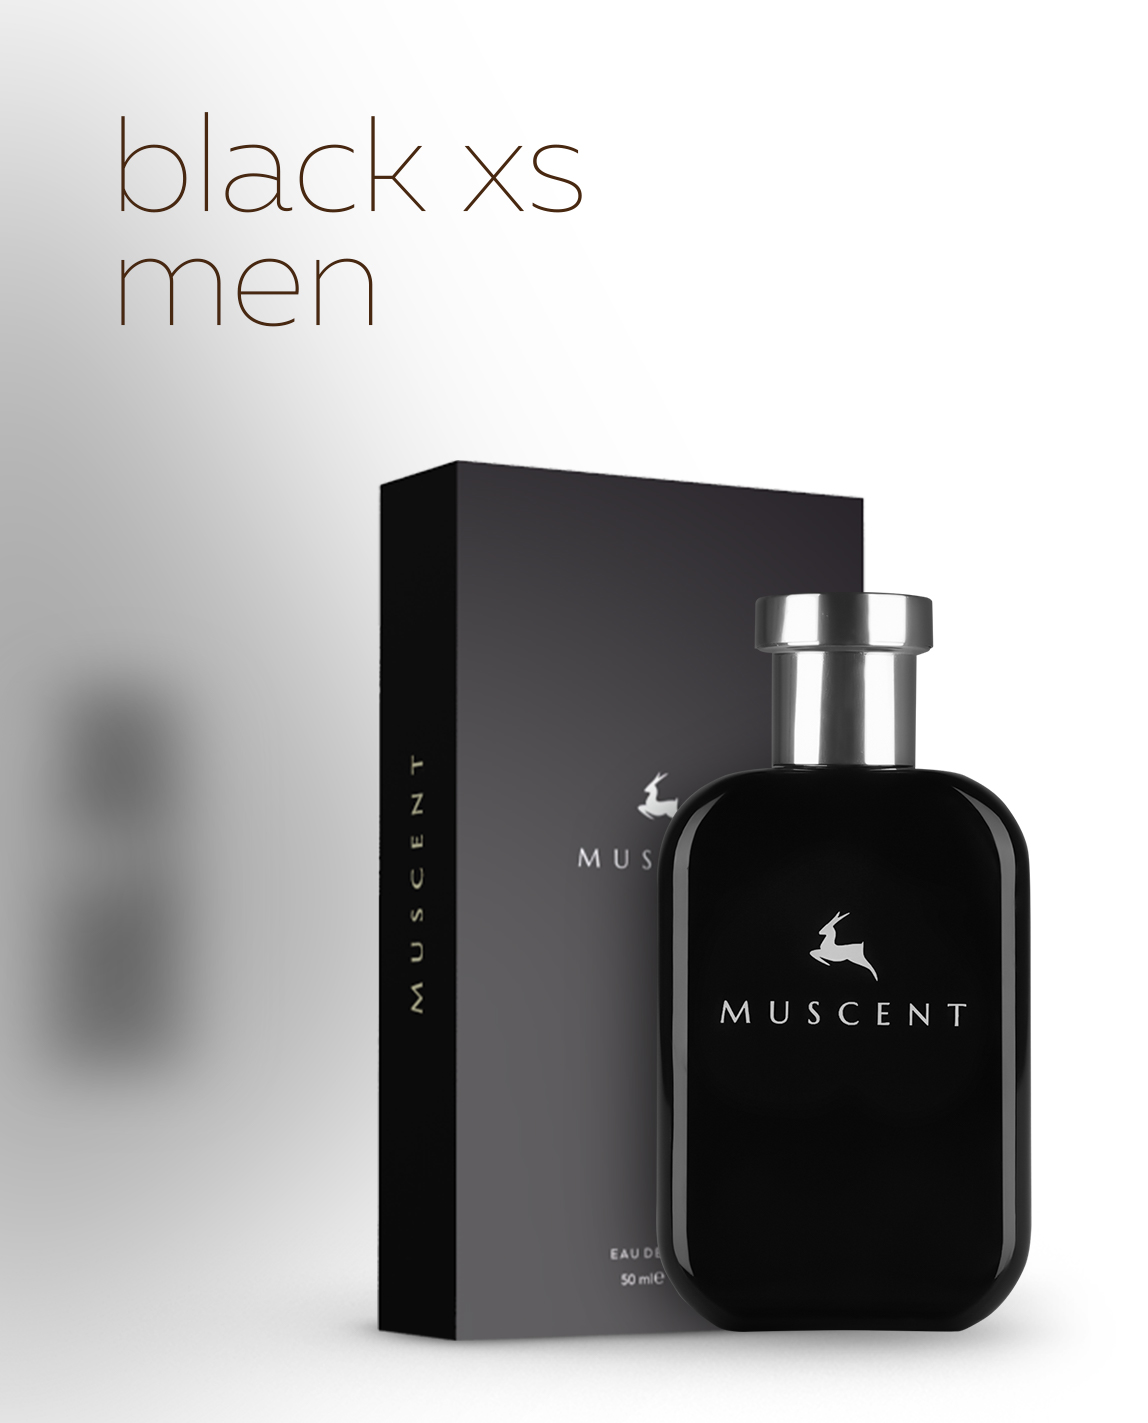 M070-Black Ixes Men – Muscent Boutique Perfume